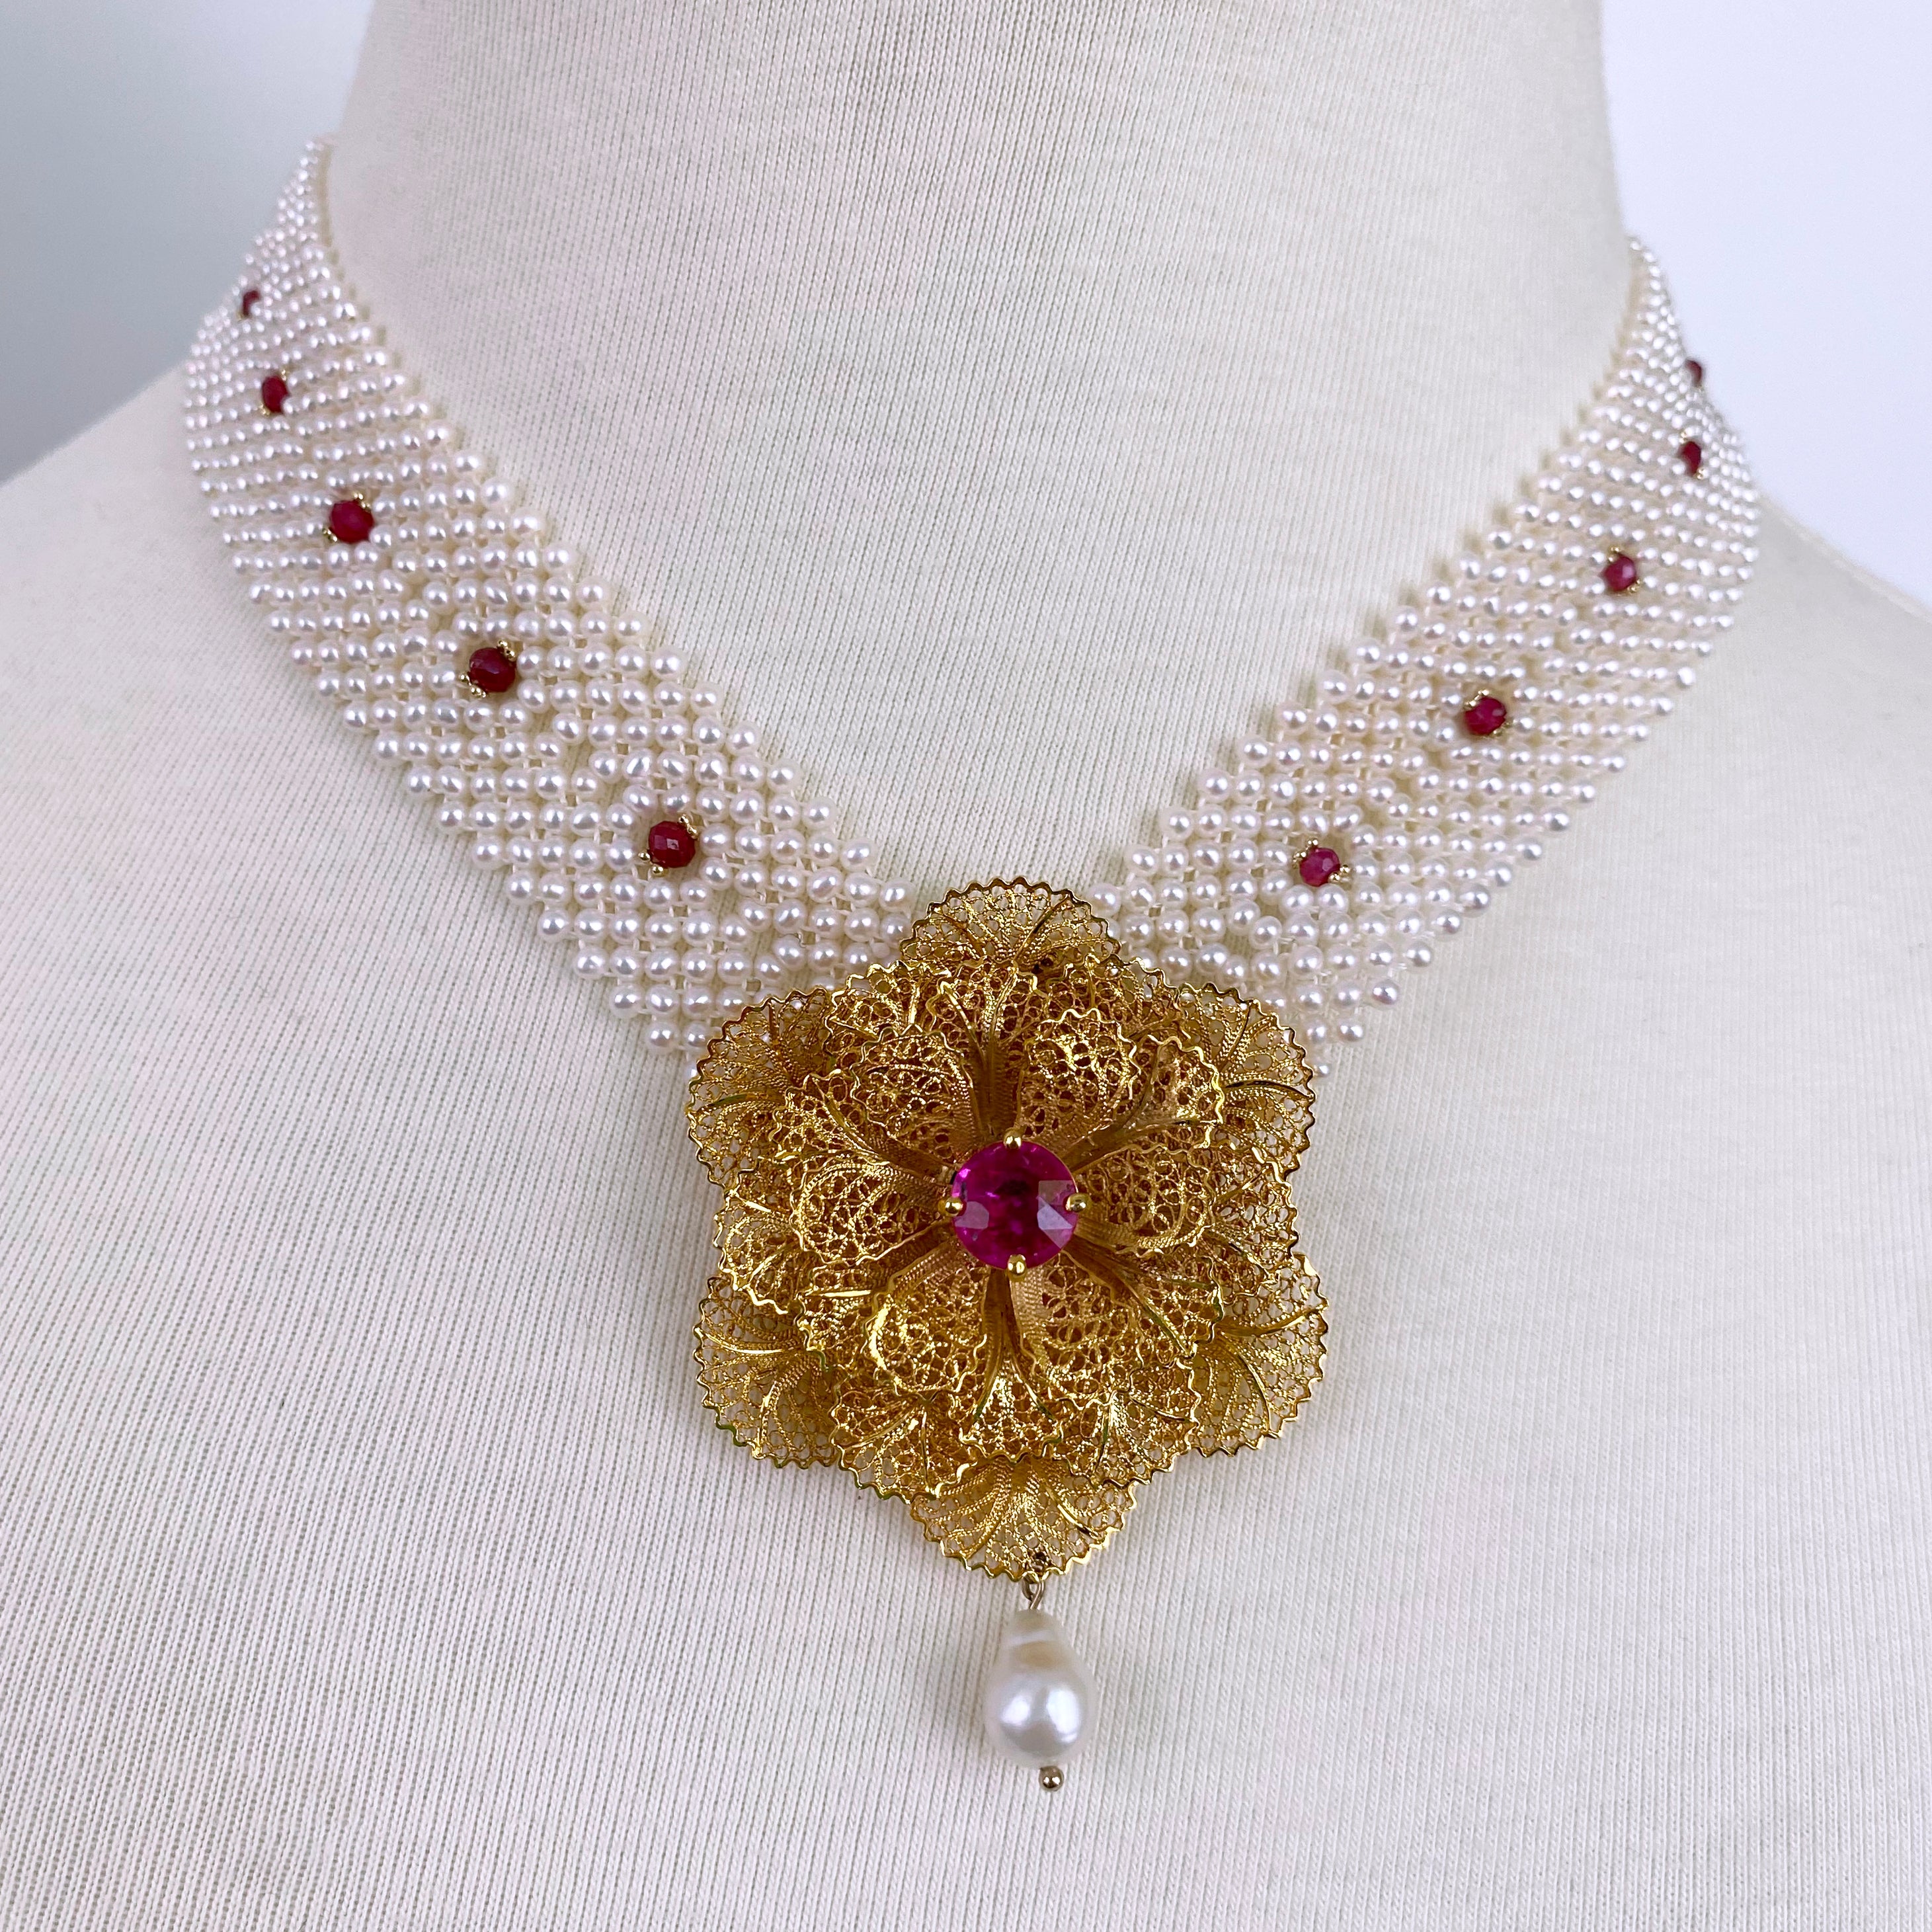 Einzigartige Halskette von Marina J.
Dieses Stück wurde mit einer antiken Blumenbrosche gefertigt, die als Mittelstück überarbeitet wurde. Die 18k Gelbgold plattiert - Silber Floral Brosche hält schöne filigrane Details, Perle Tropfen und eine